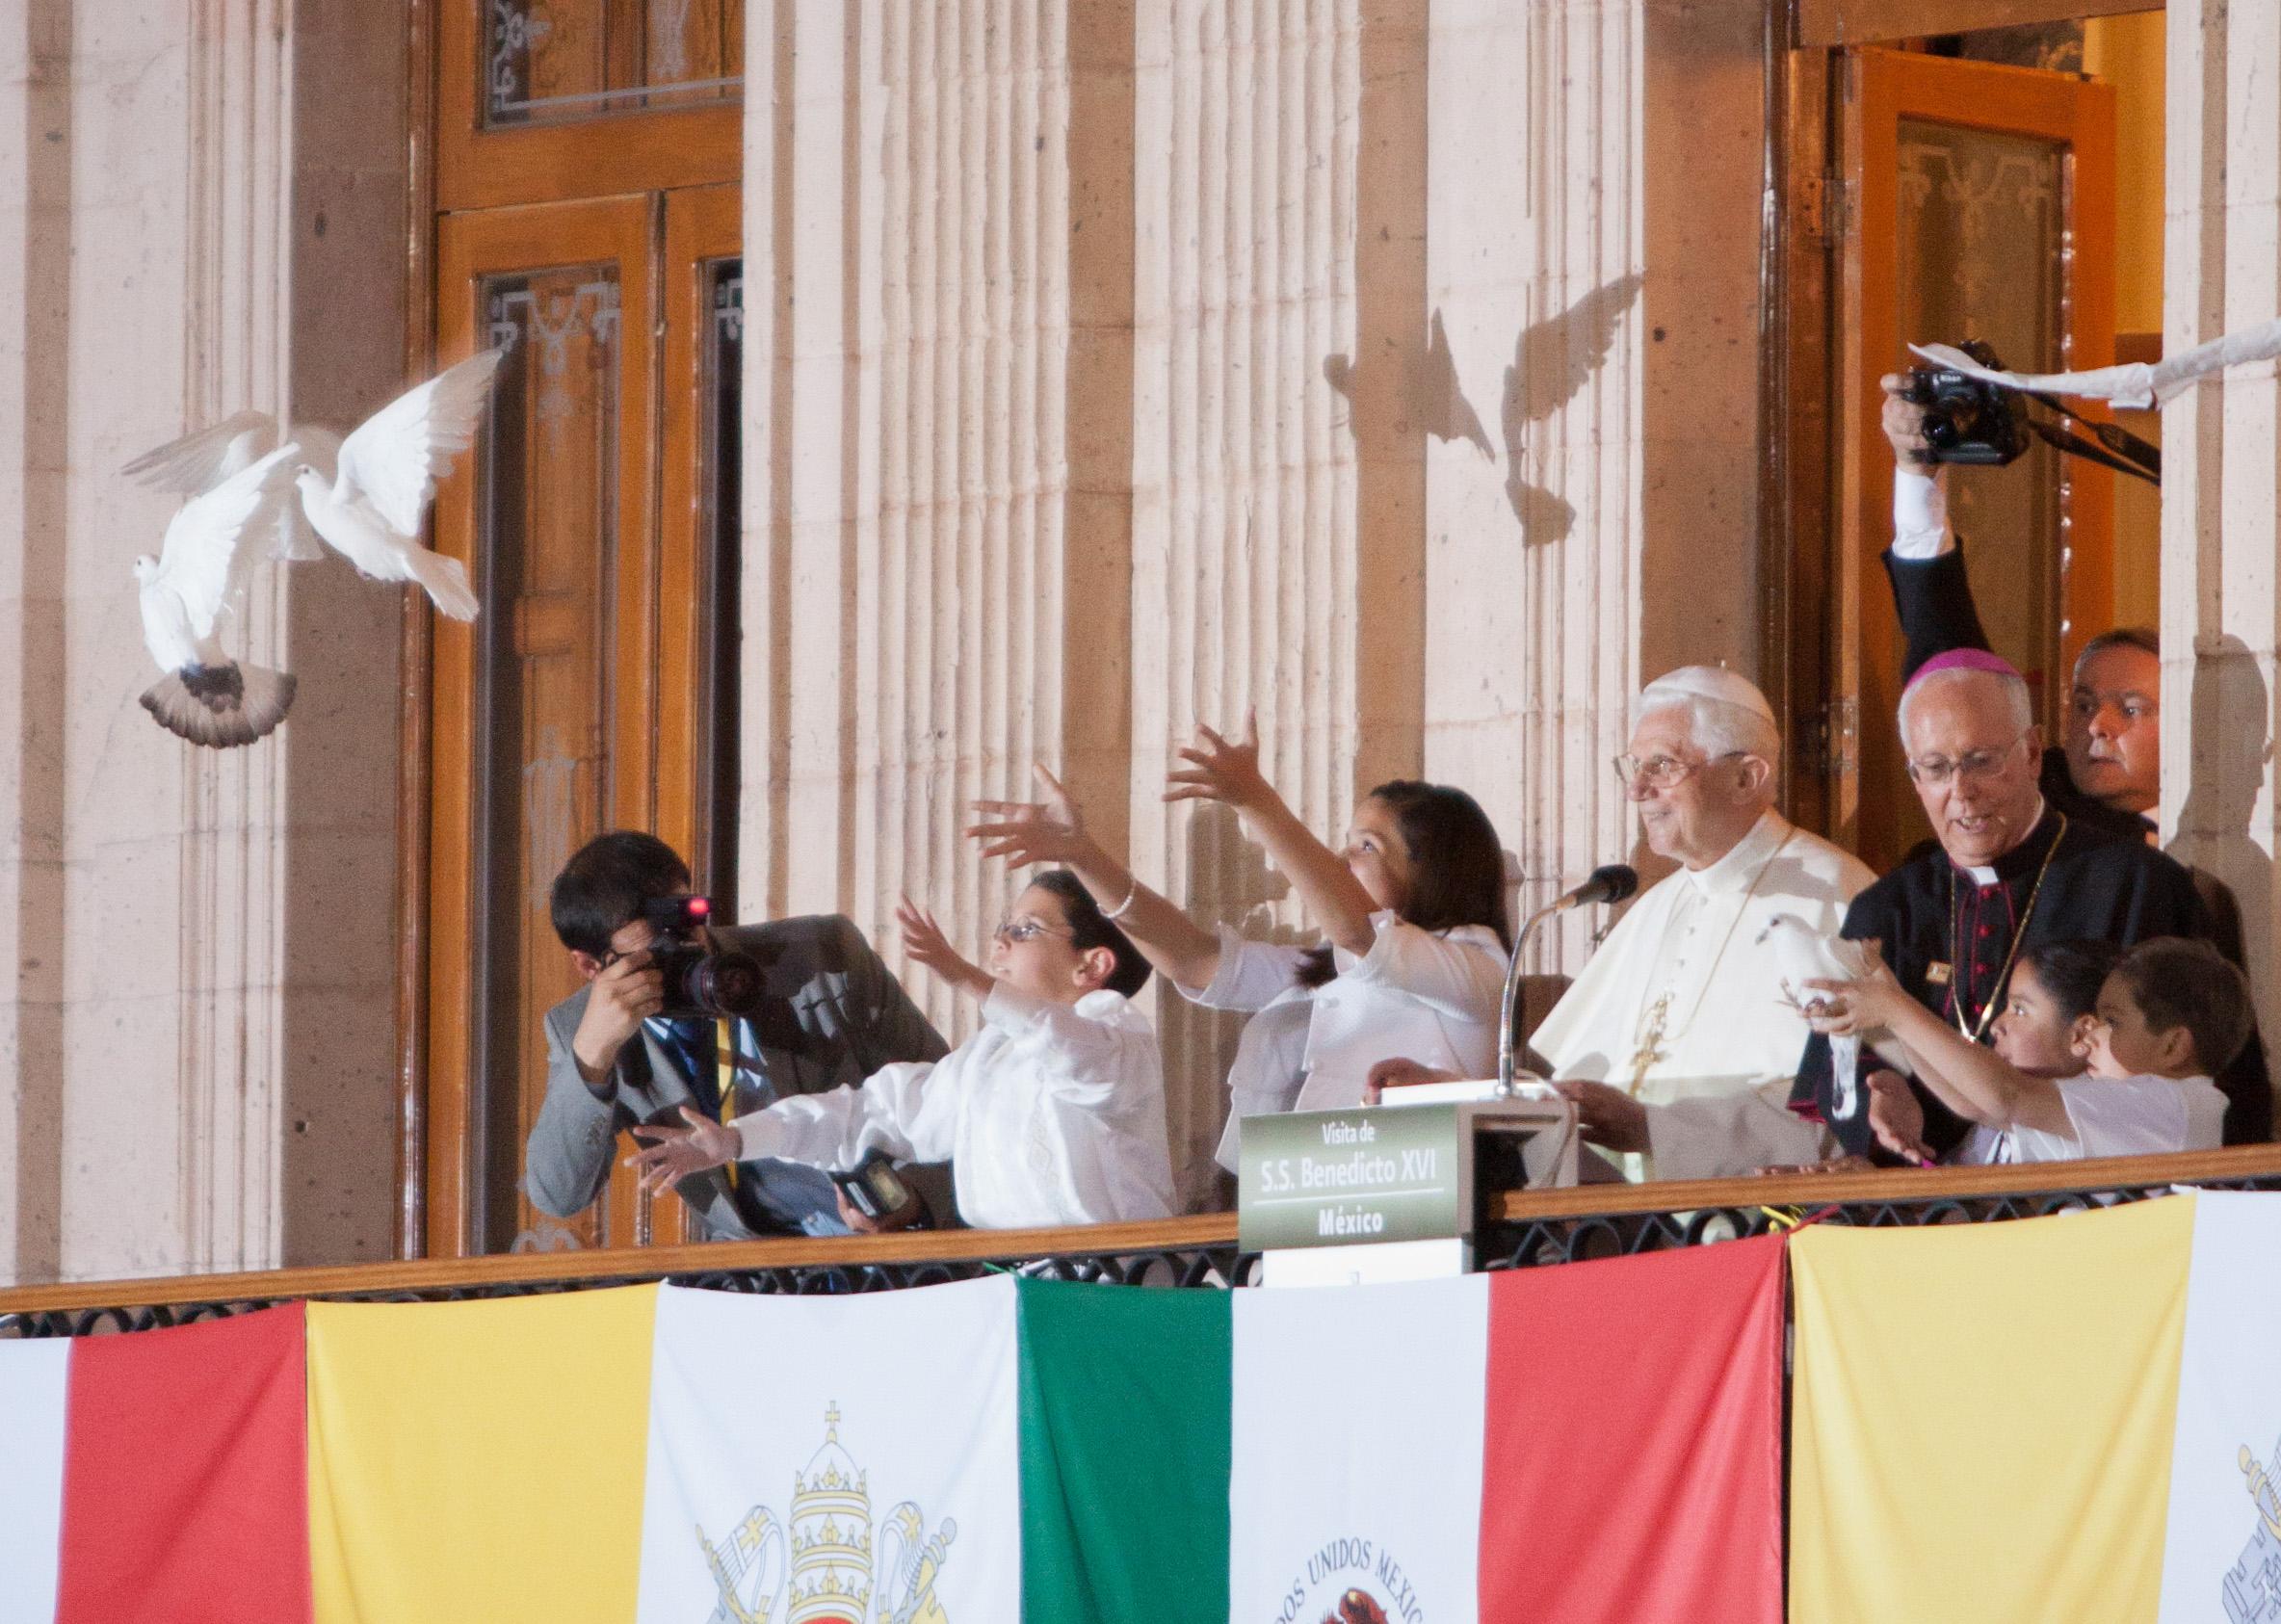 Revela Calderón reunión de víctimas con el Papa; Vaticano lo niega